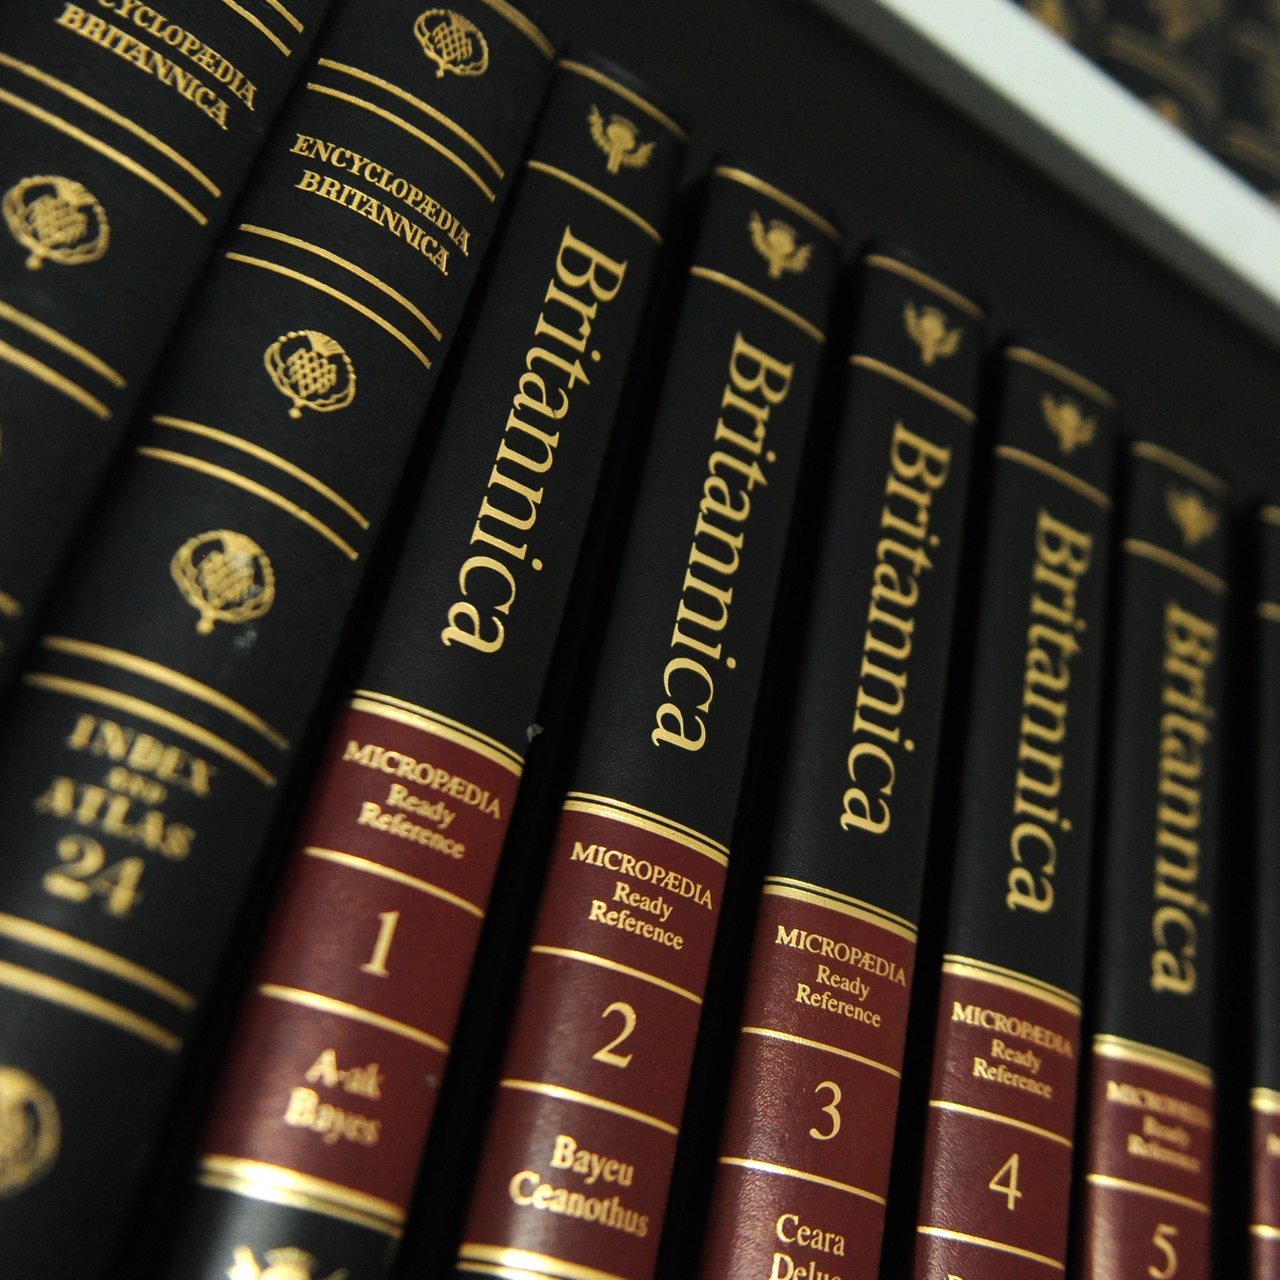 Buchausgabe der "Encyclopaedia Britannica"